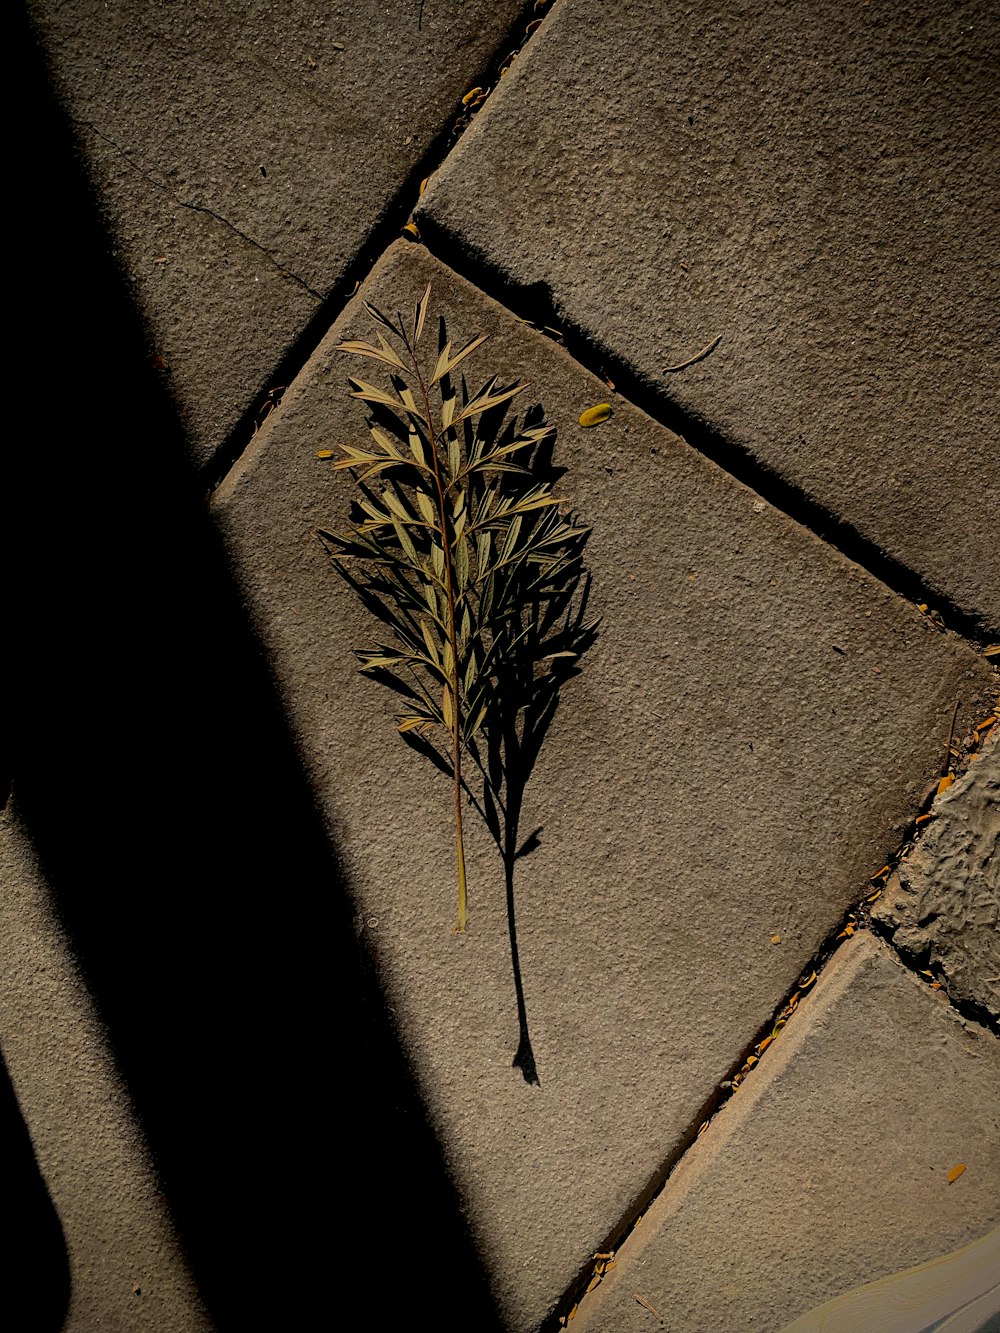 a small plant is sitting on a sidewalk